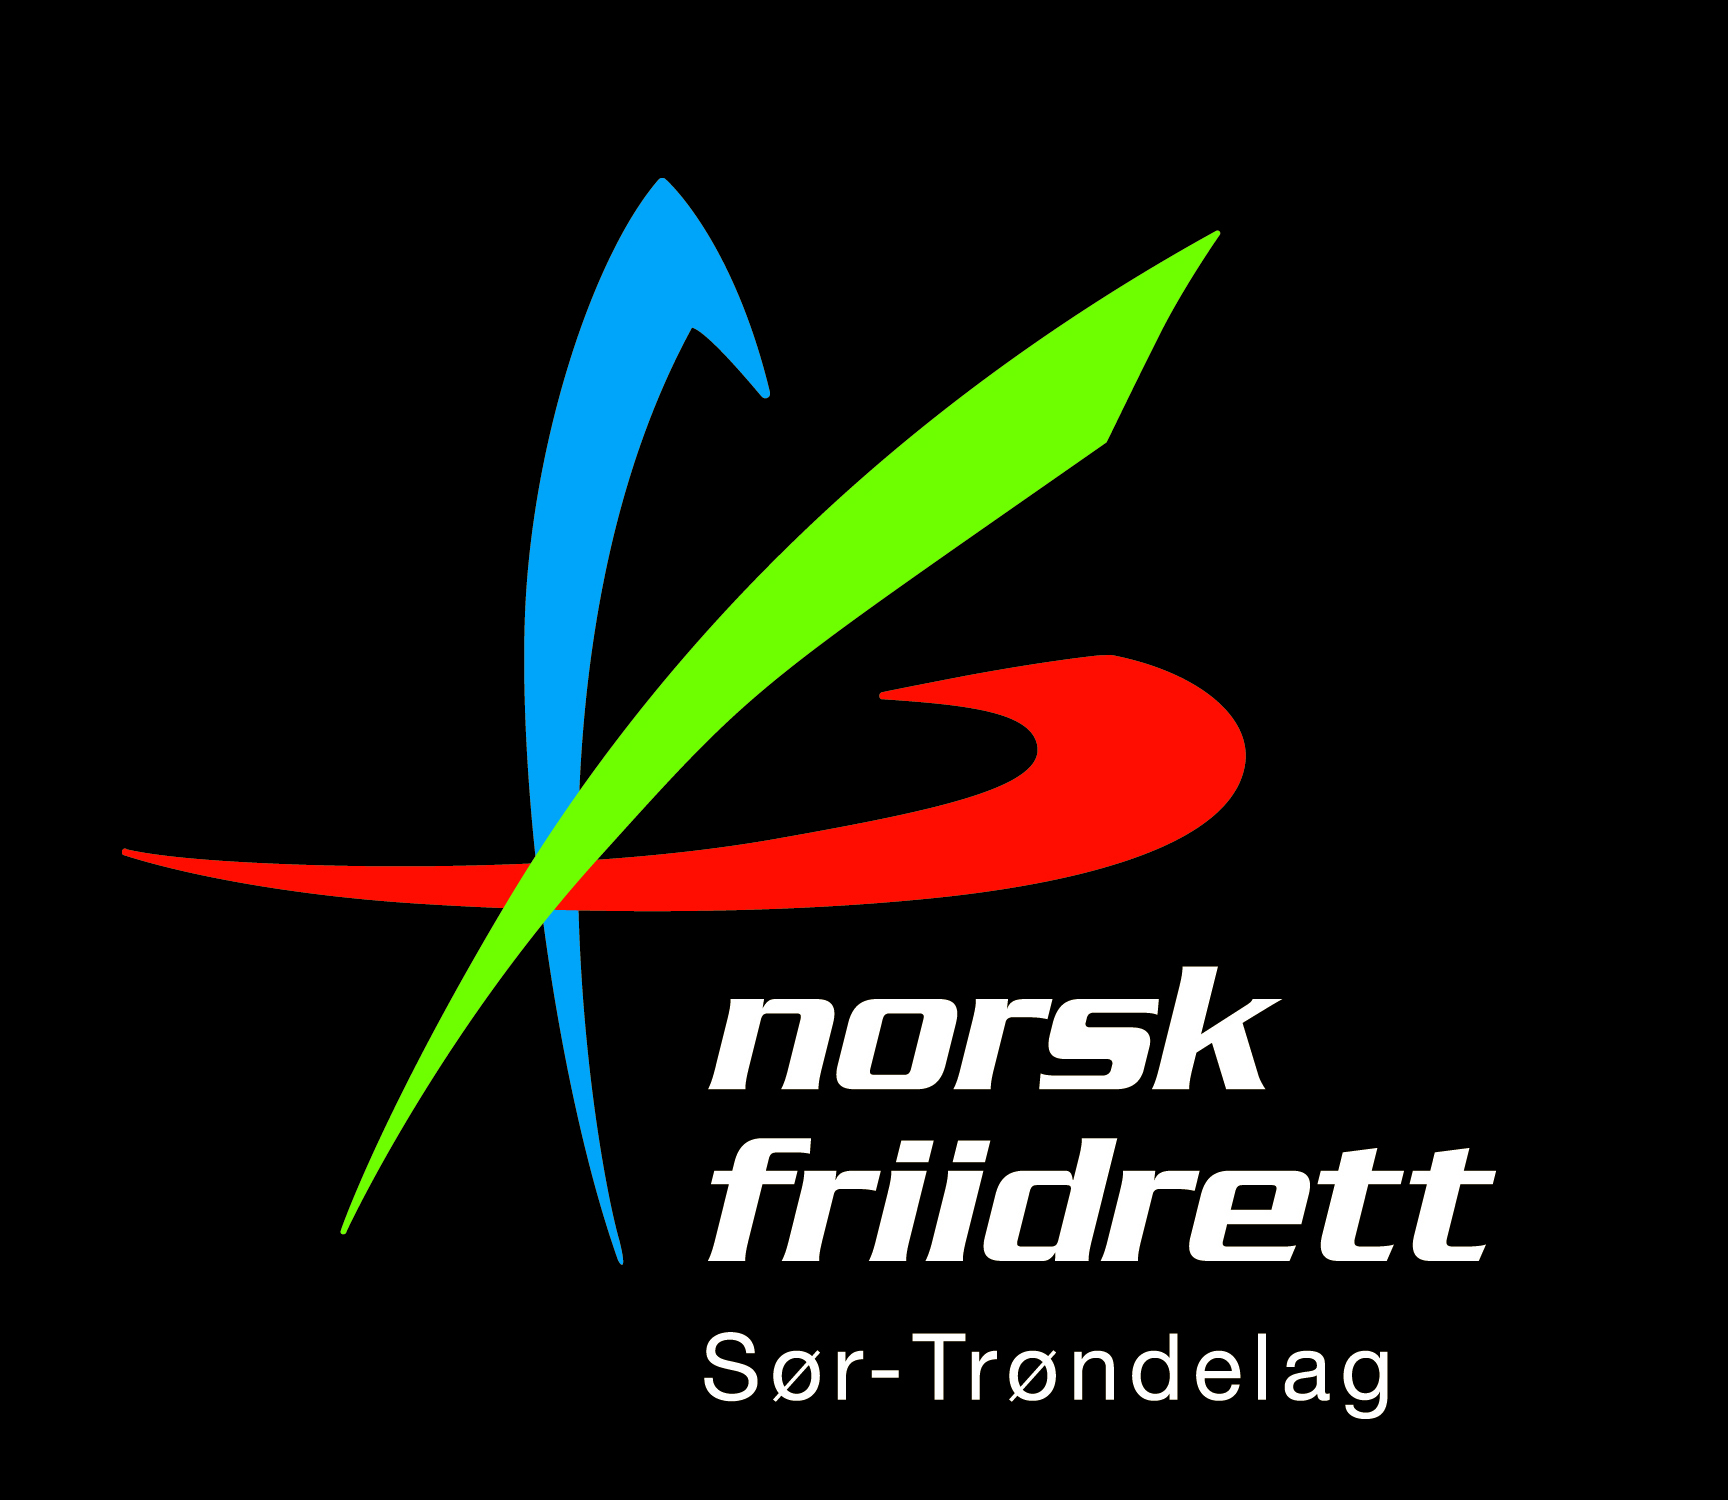 Logo_CMYK_neg_SorTrondelag.jpeg